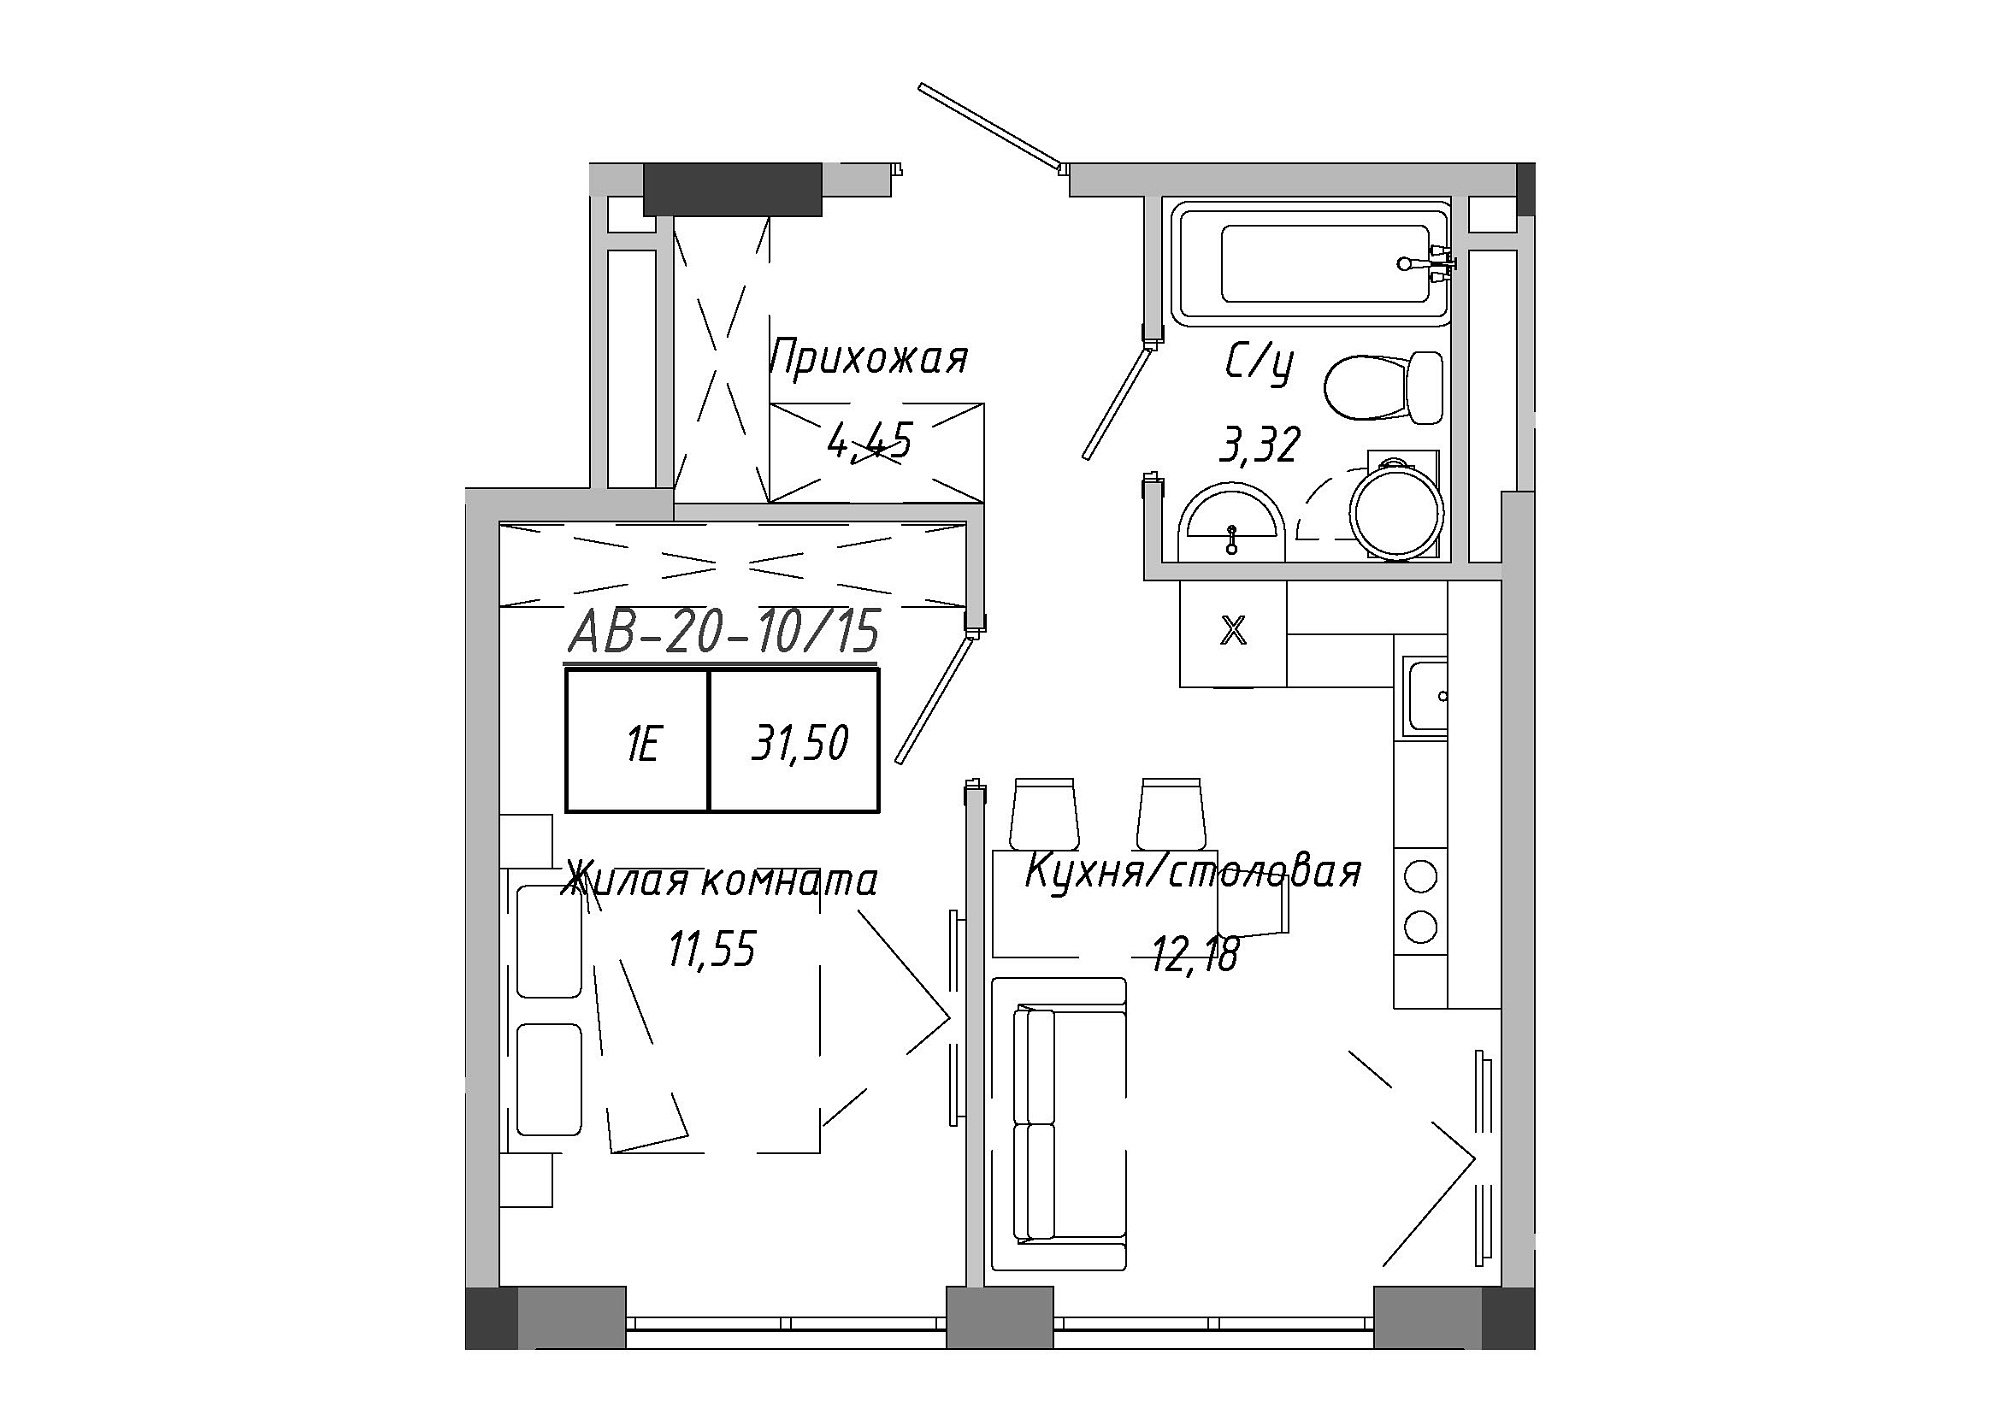 Планування 1-к квартира площею 31.51м2, AB-20-10/00015.